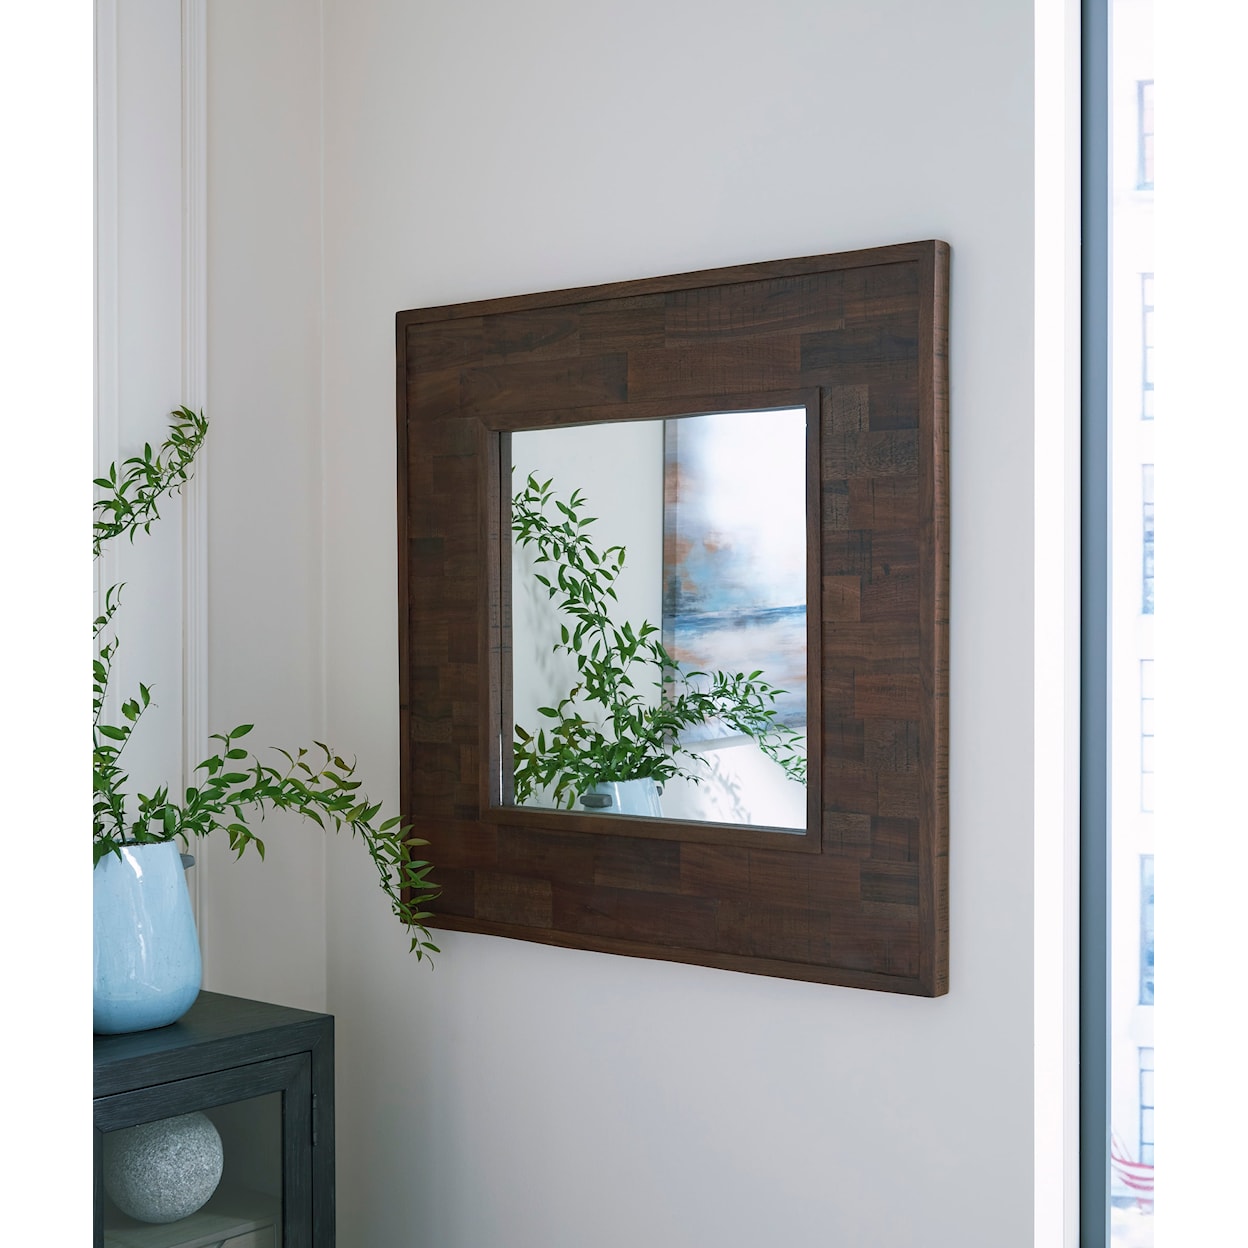 Ashley Furniture Signature Design Hensington Accent Mirror